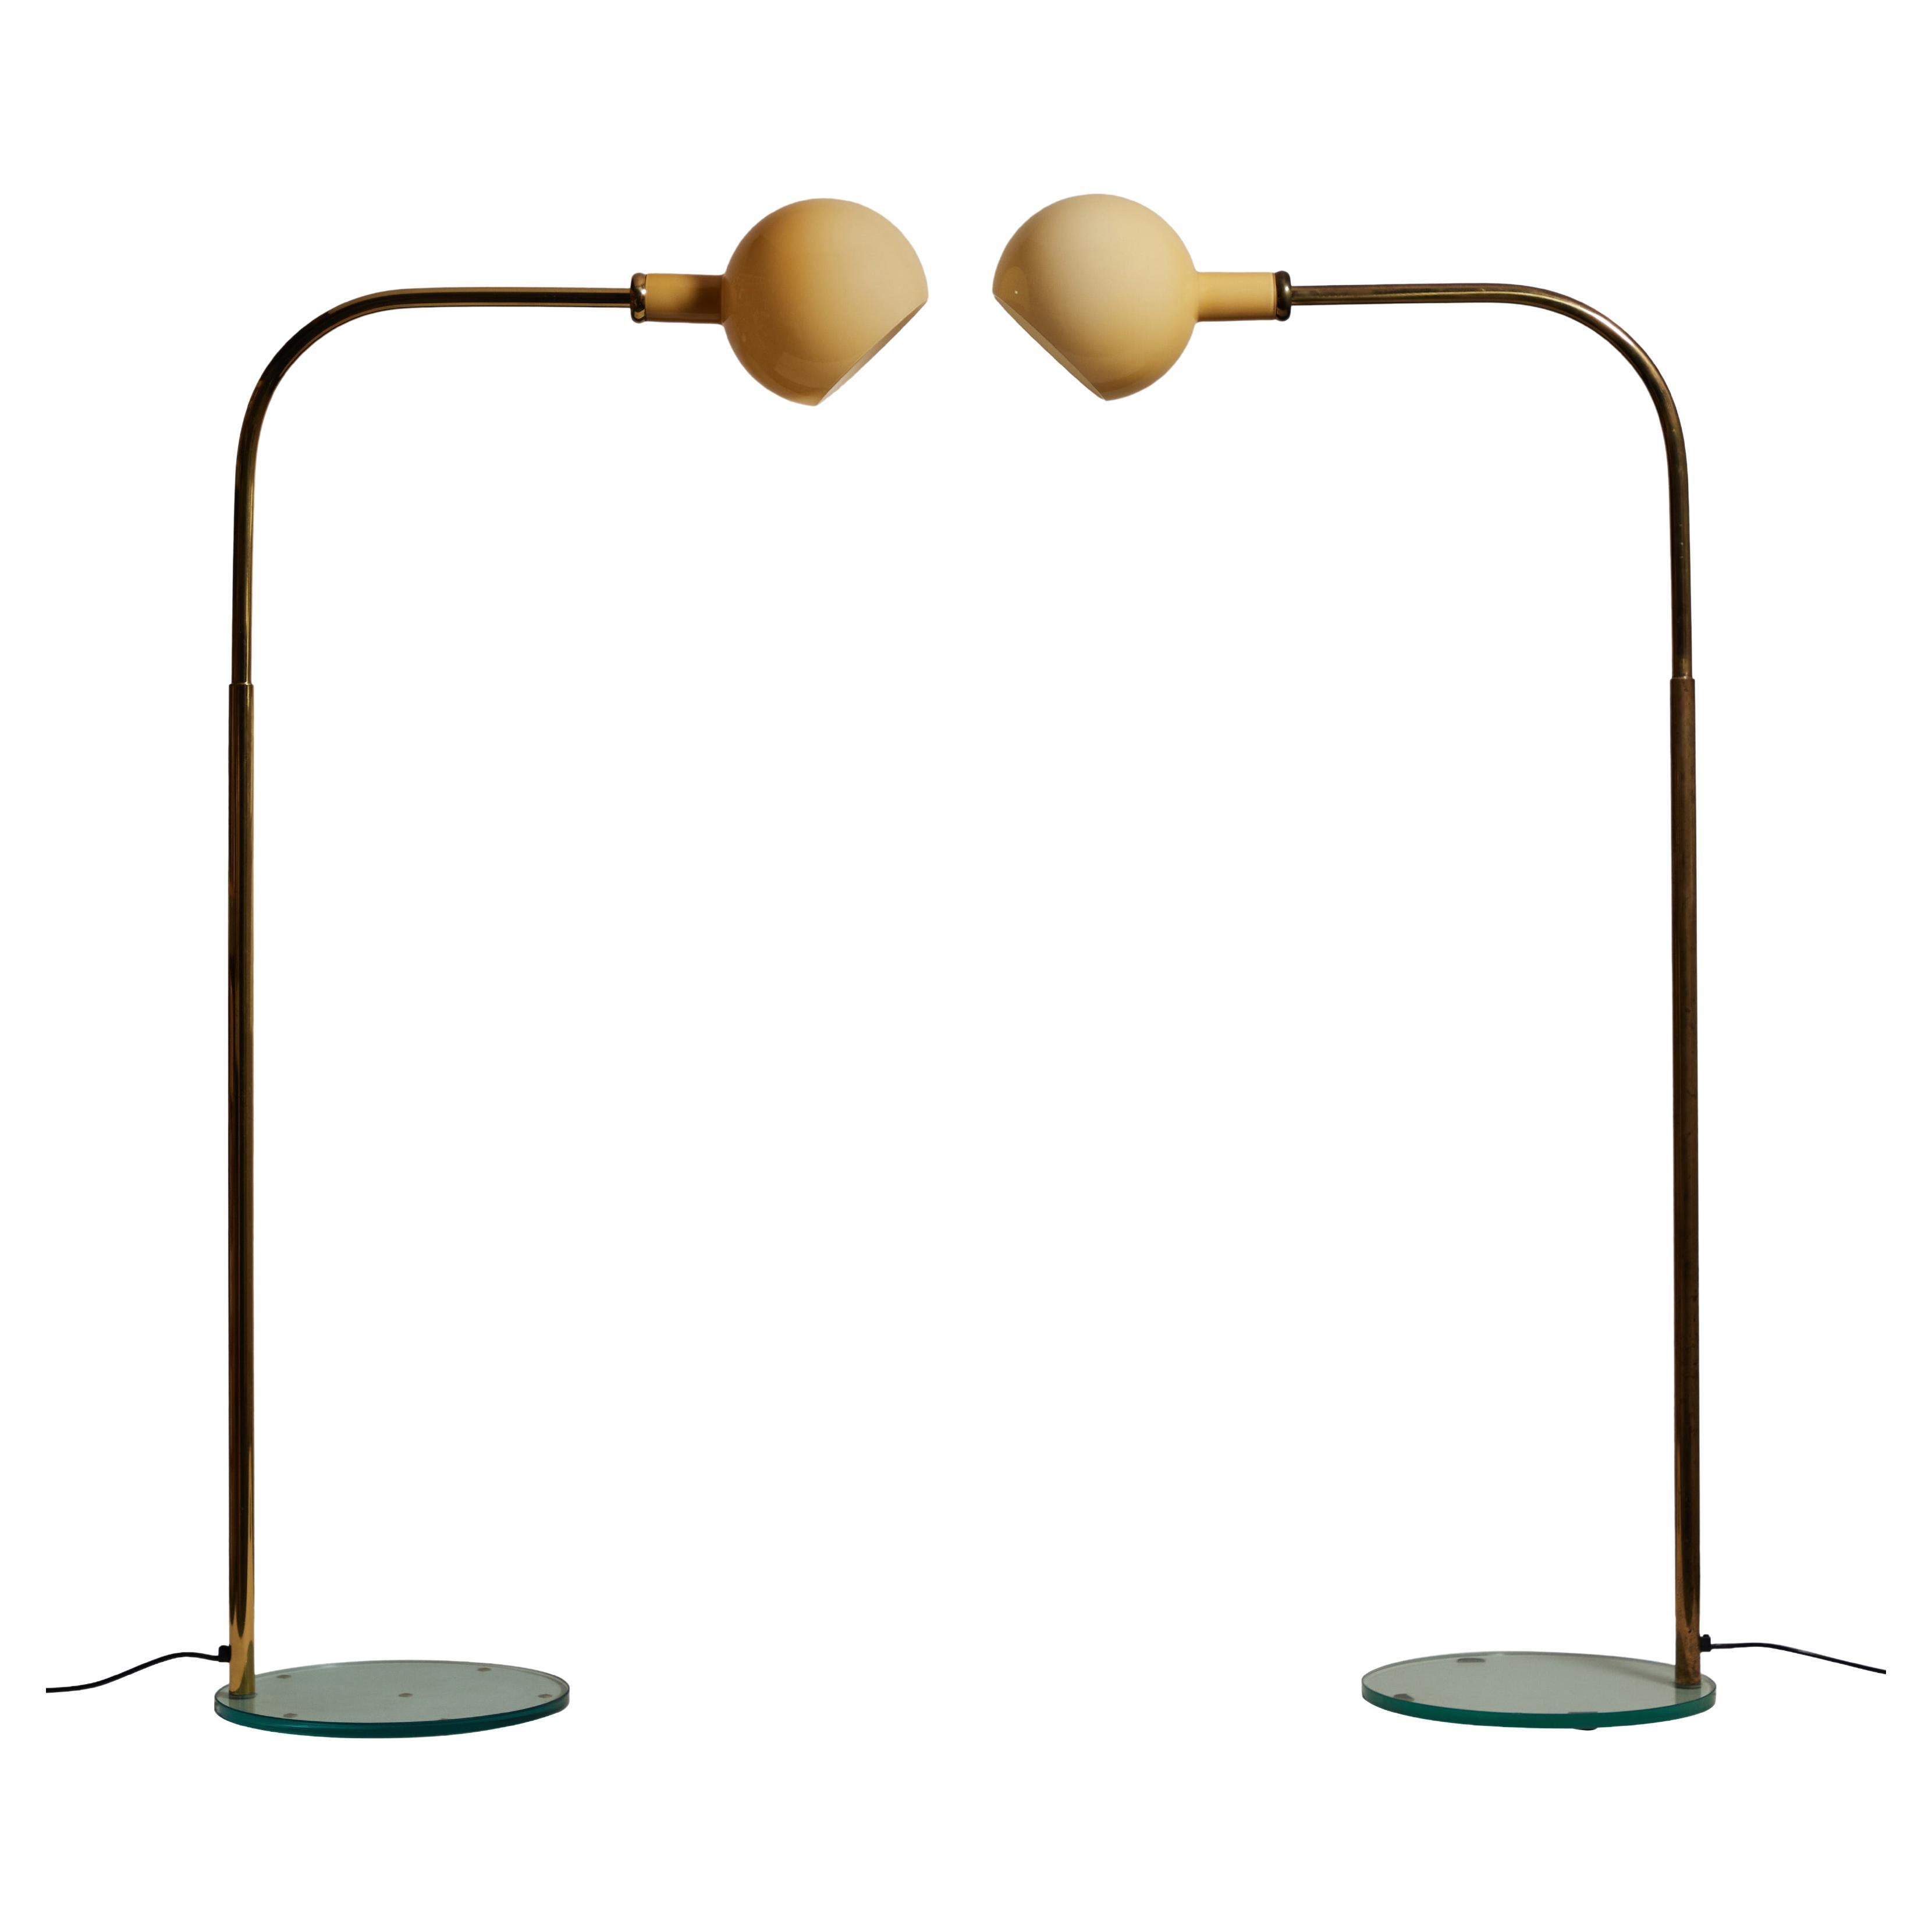 Pair of "Parola" Floor Lamps by Gae Aulenti and Piero Castiglioni